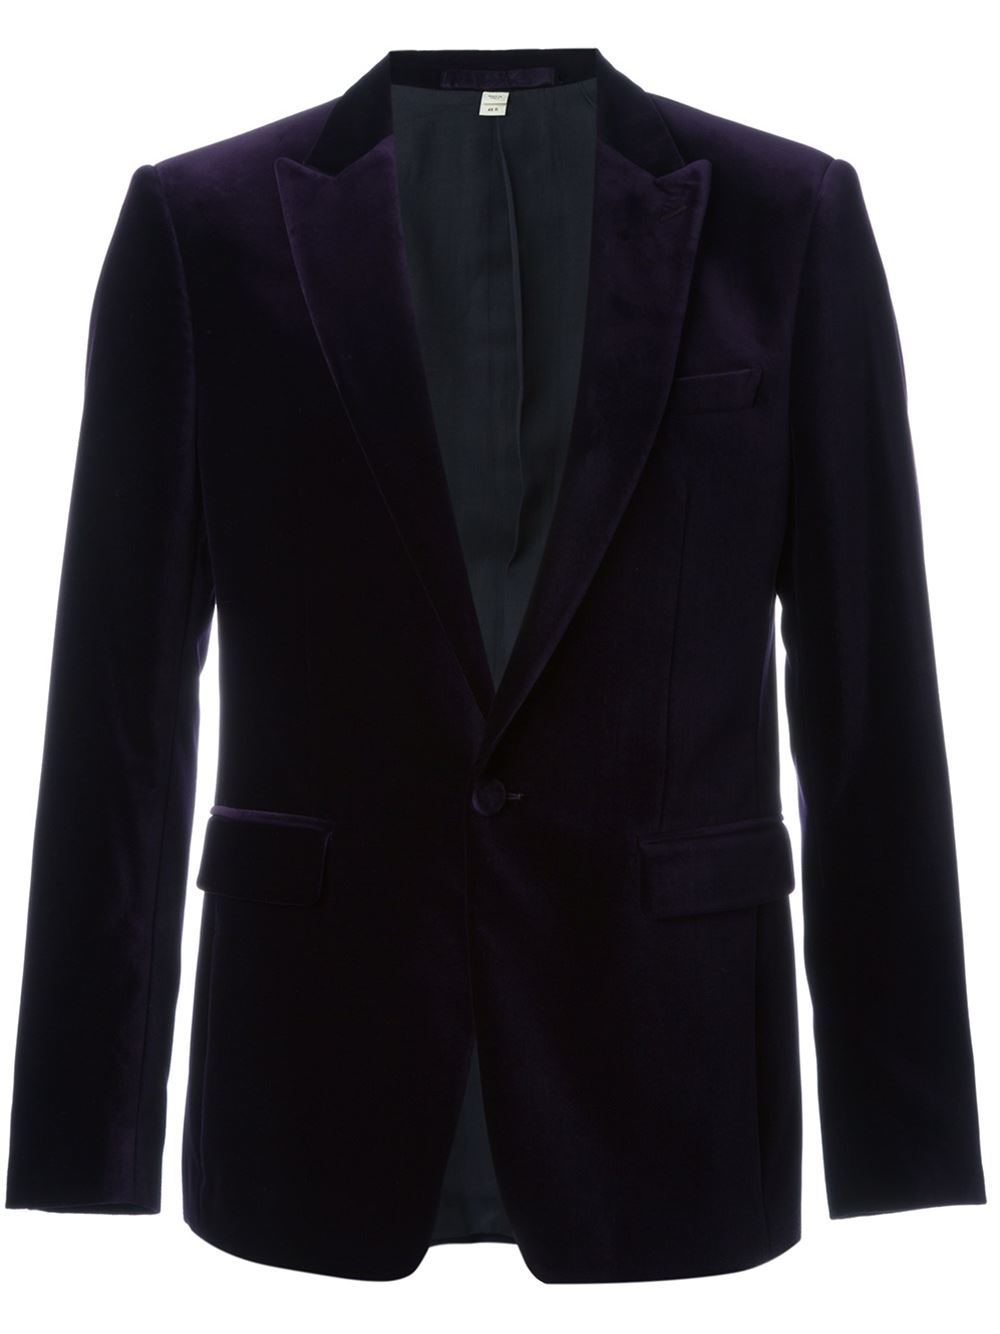 Lyst - Burberry Velvet Dinner Jacket in Black for Men